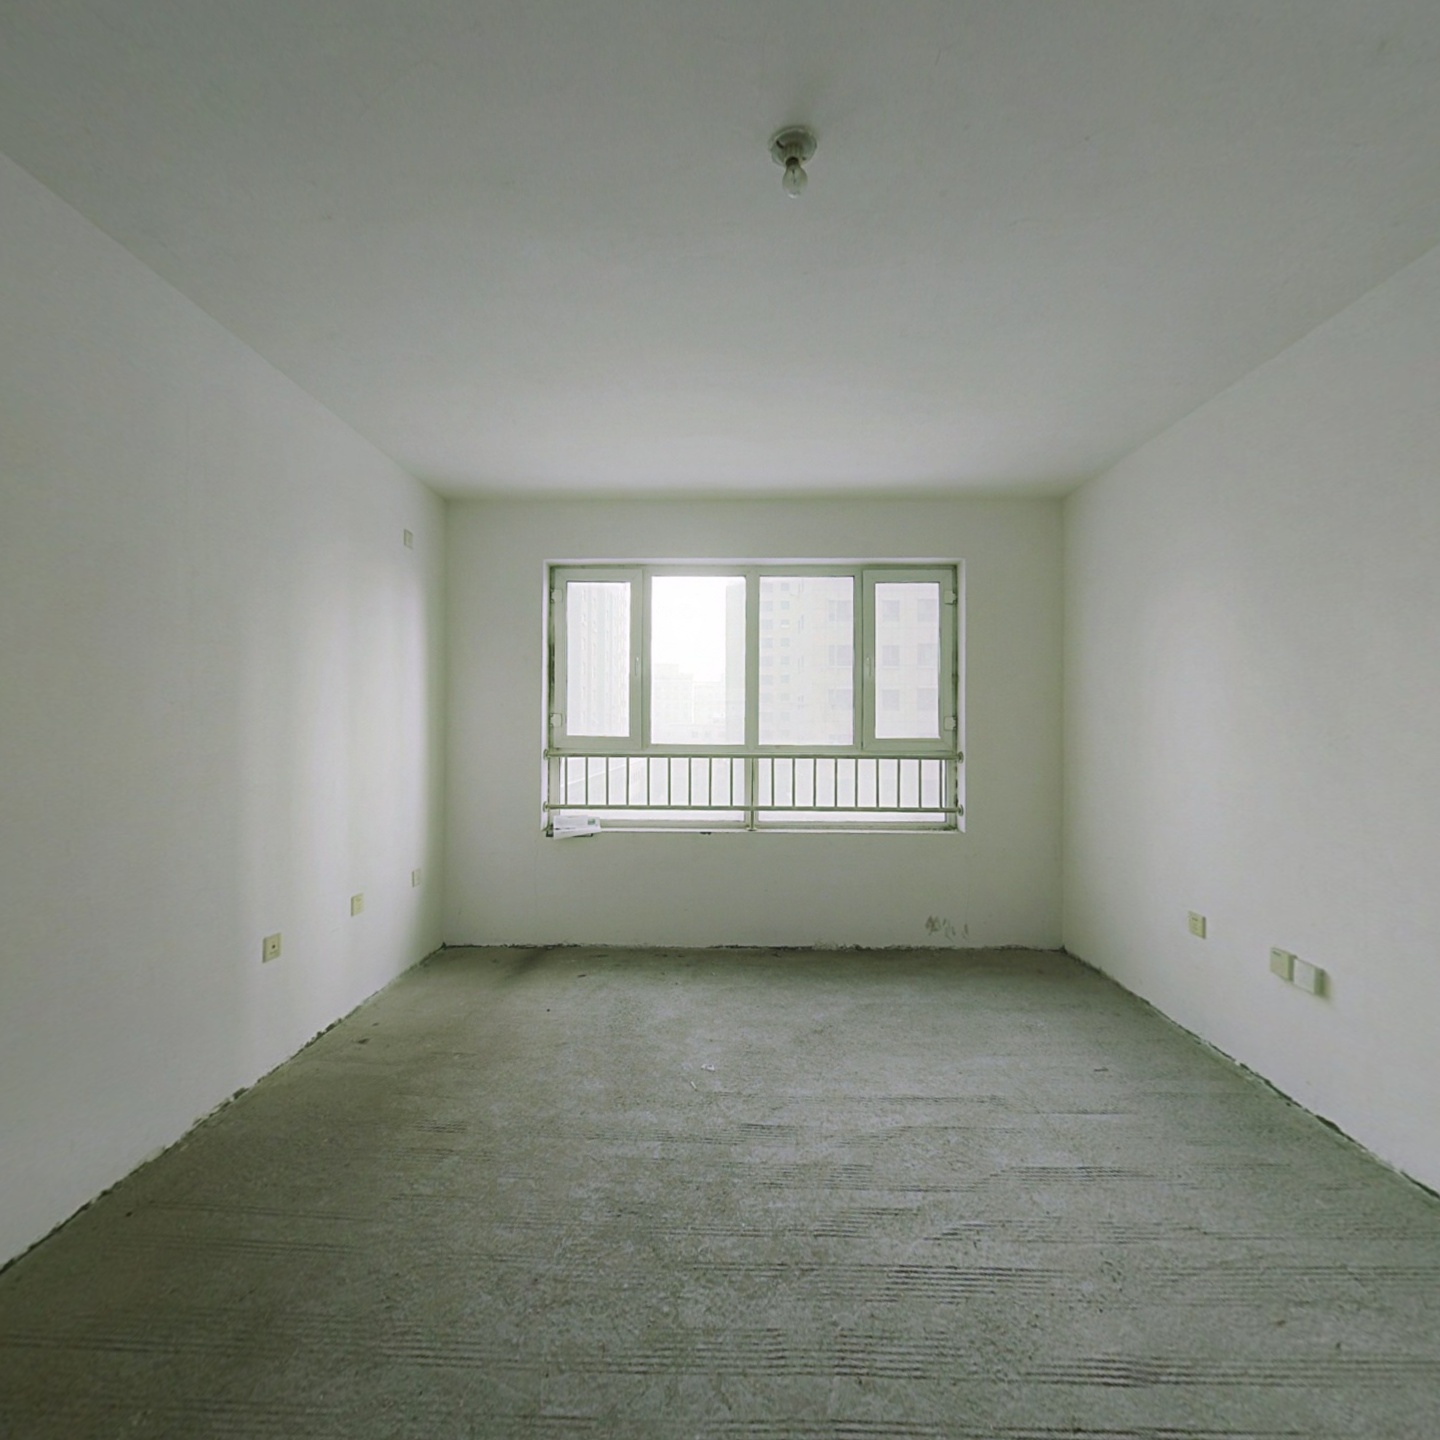 老北园春克西街林森国际126平3室毛坯电梯地暖房便宜卖